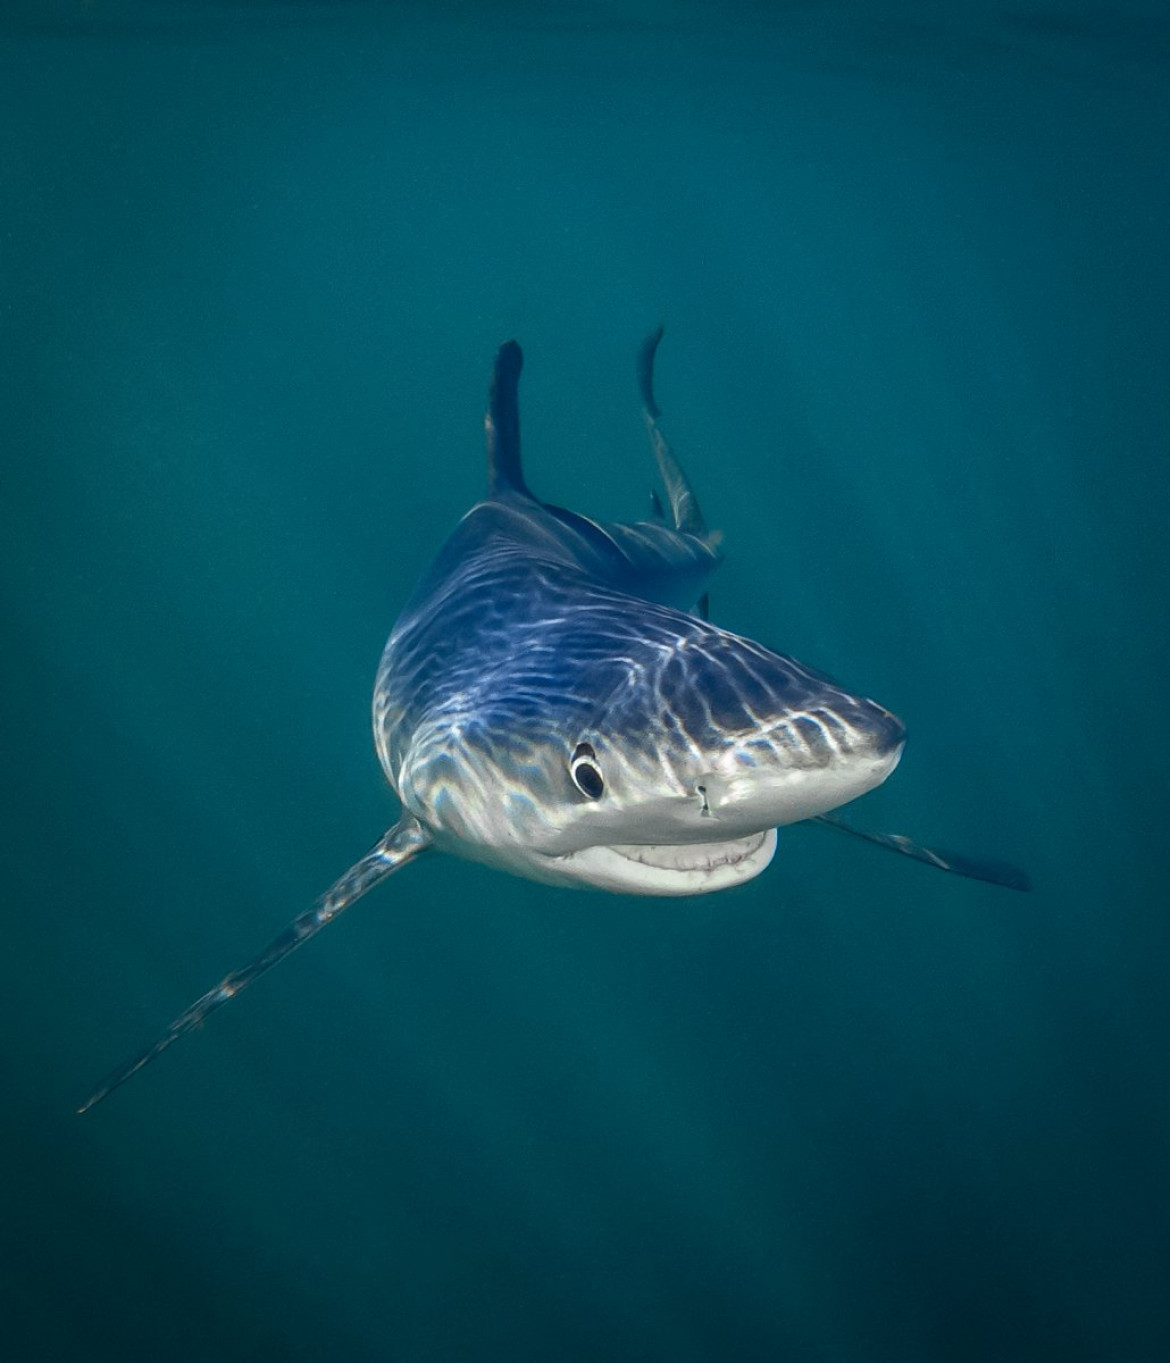 fot. Tanya Houpermans, "Smiling Blue Shark", zwycięzca w kategorii "Under the Sea Award"